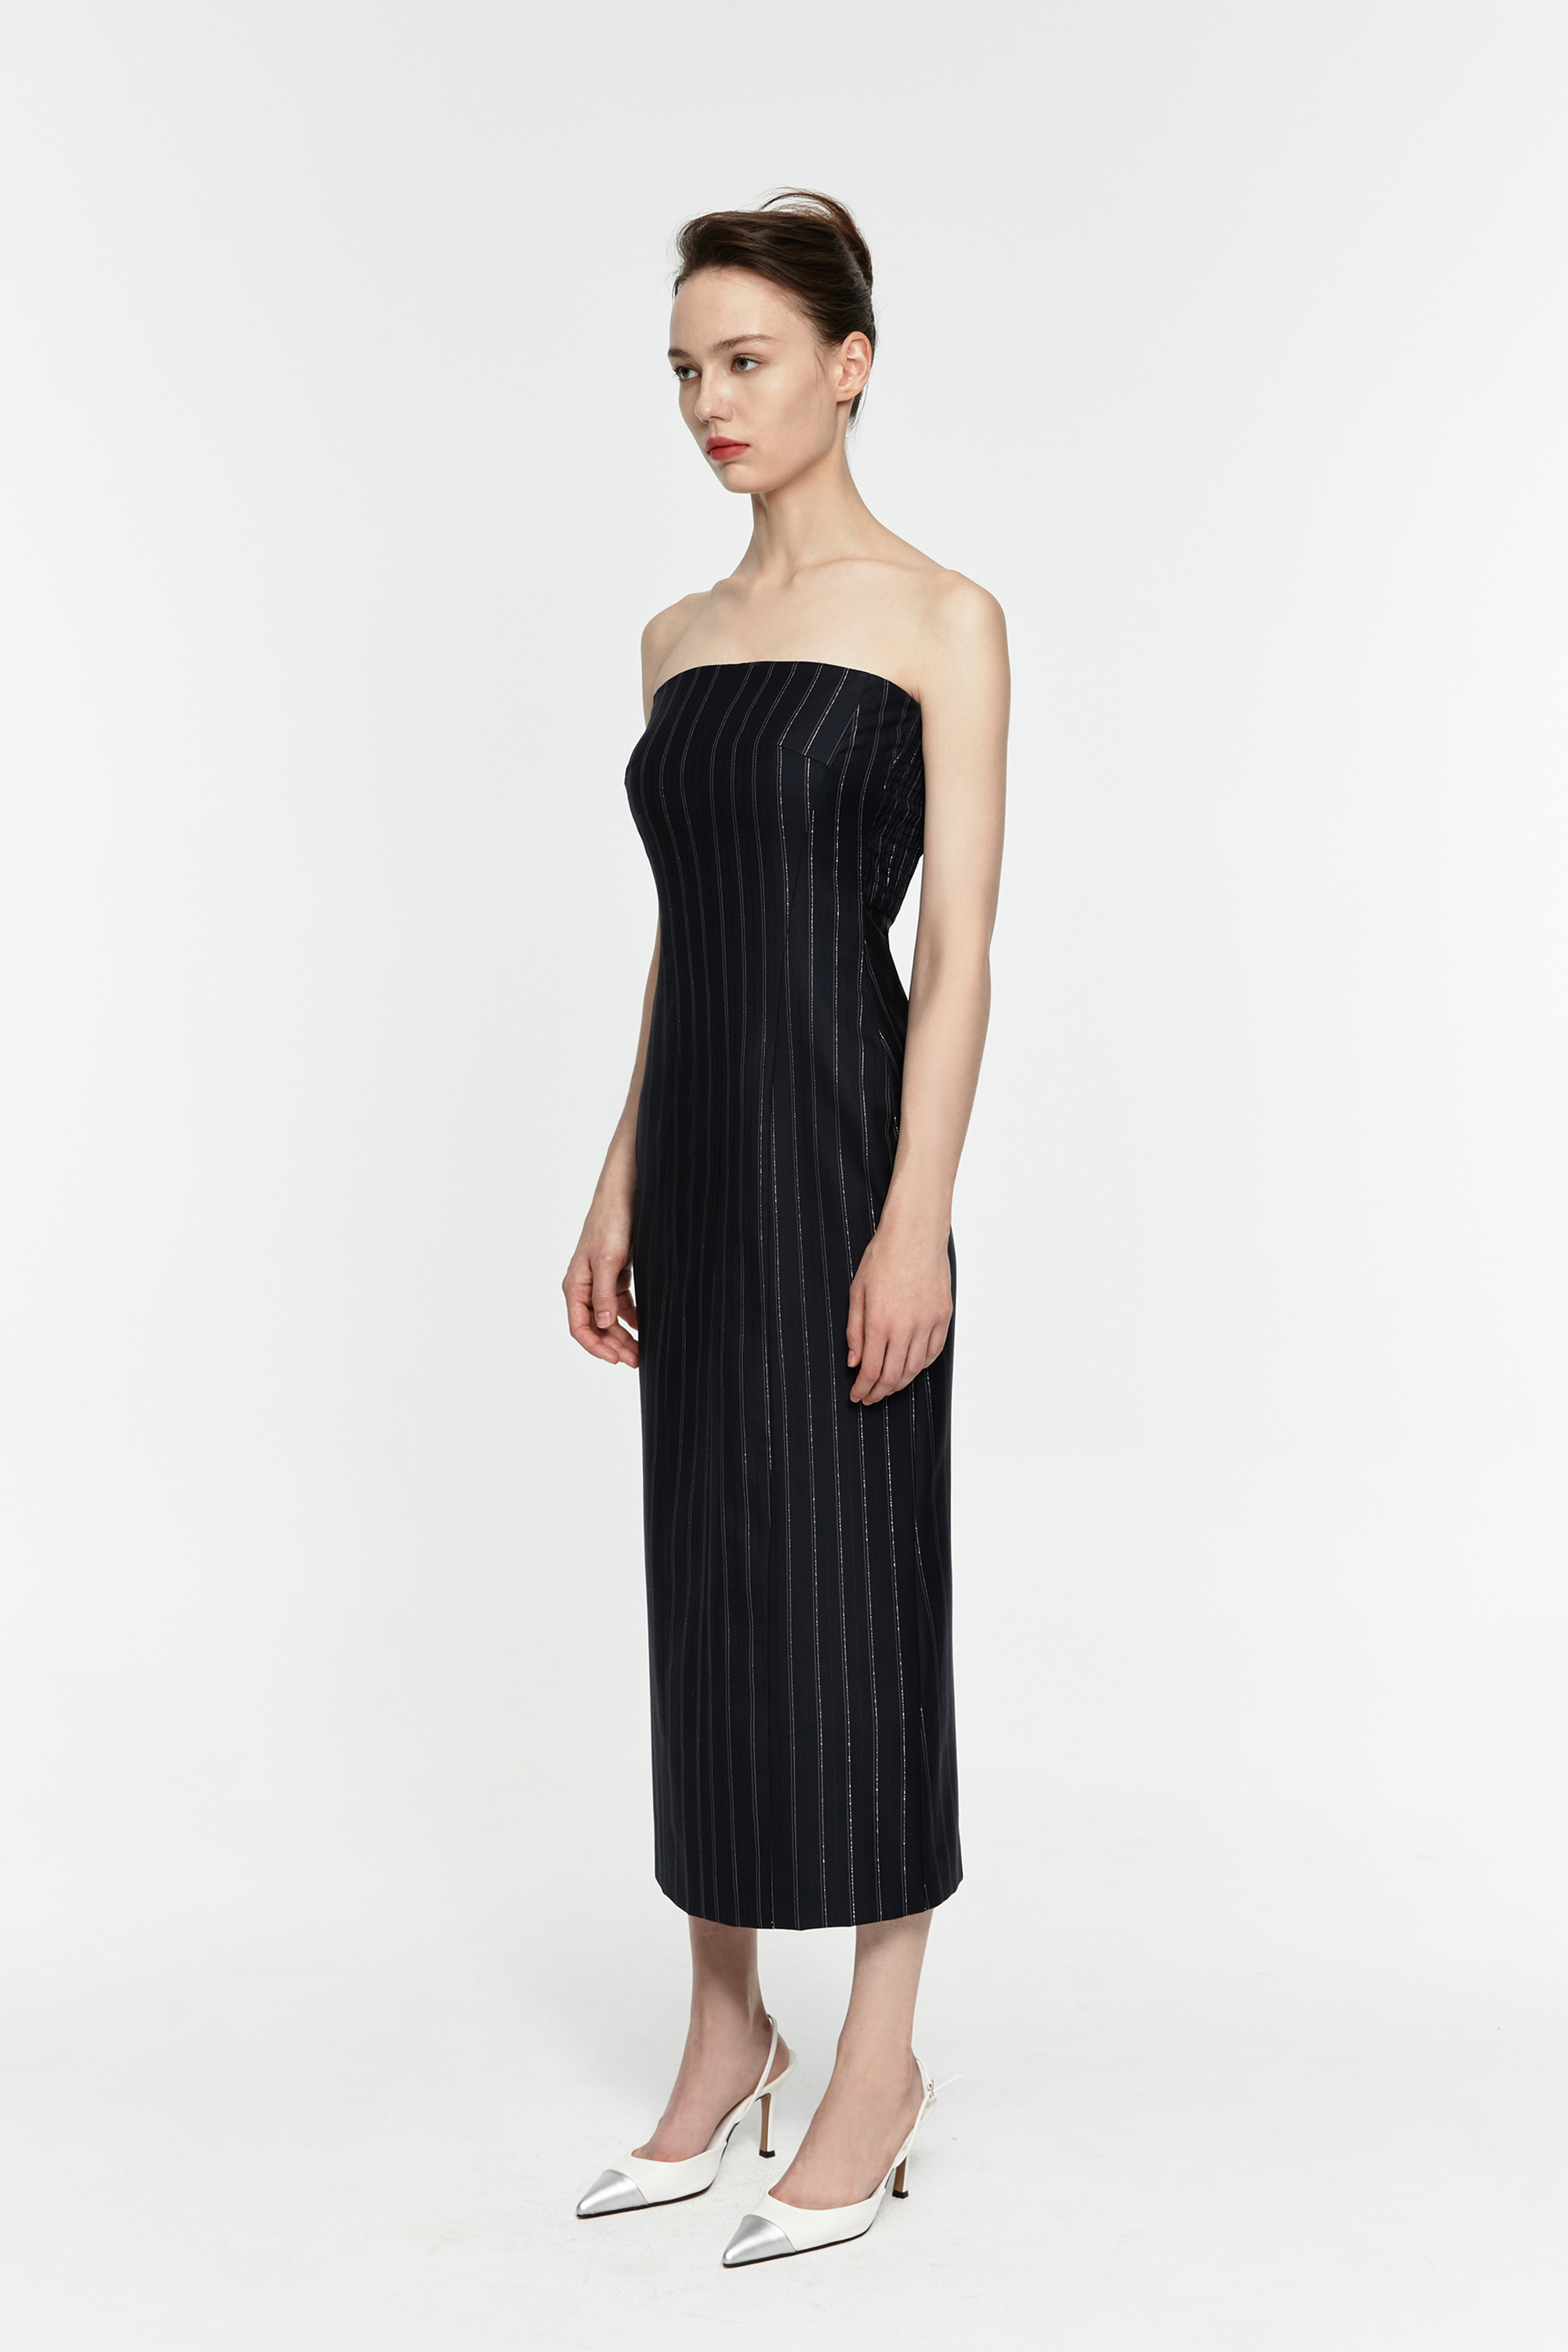 [Custom Order] Pin Stripe Tube Dress